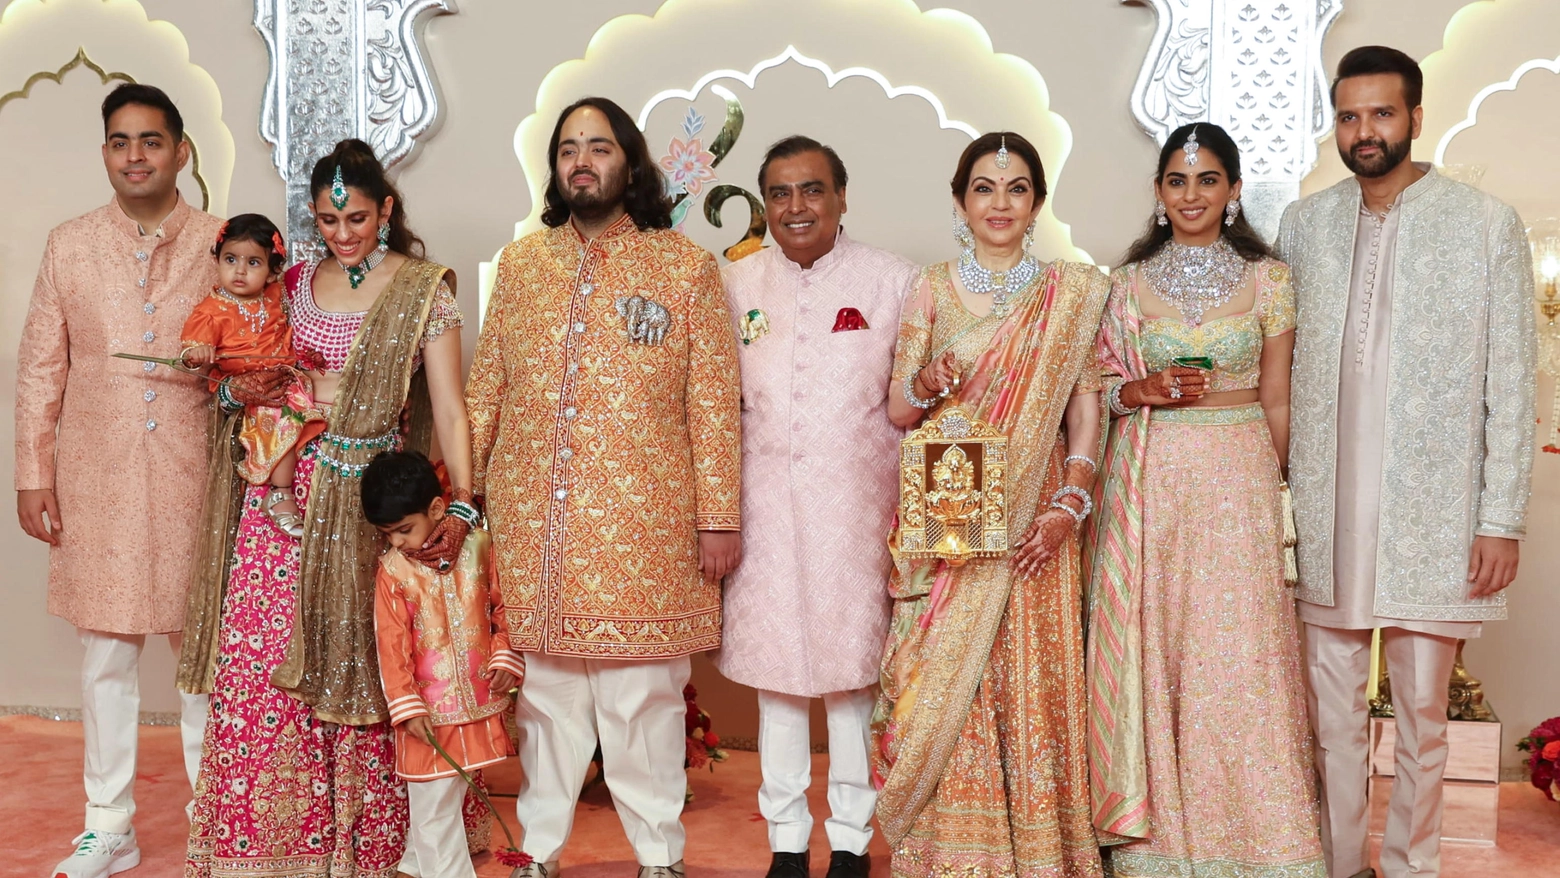 Antan Ambani, figlio del magnate Mukesh Ambani, convola a nozze con l’ereditiera Radhika Merchant. Dopo mesi di party e celebrazioni ora tre giorni di riti a Mumbai